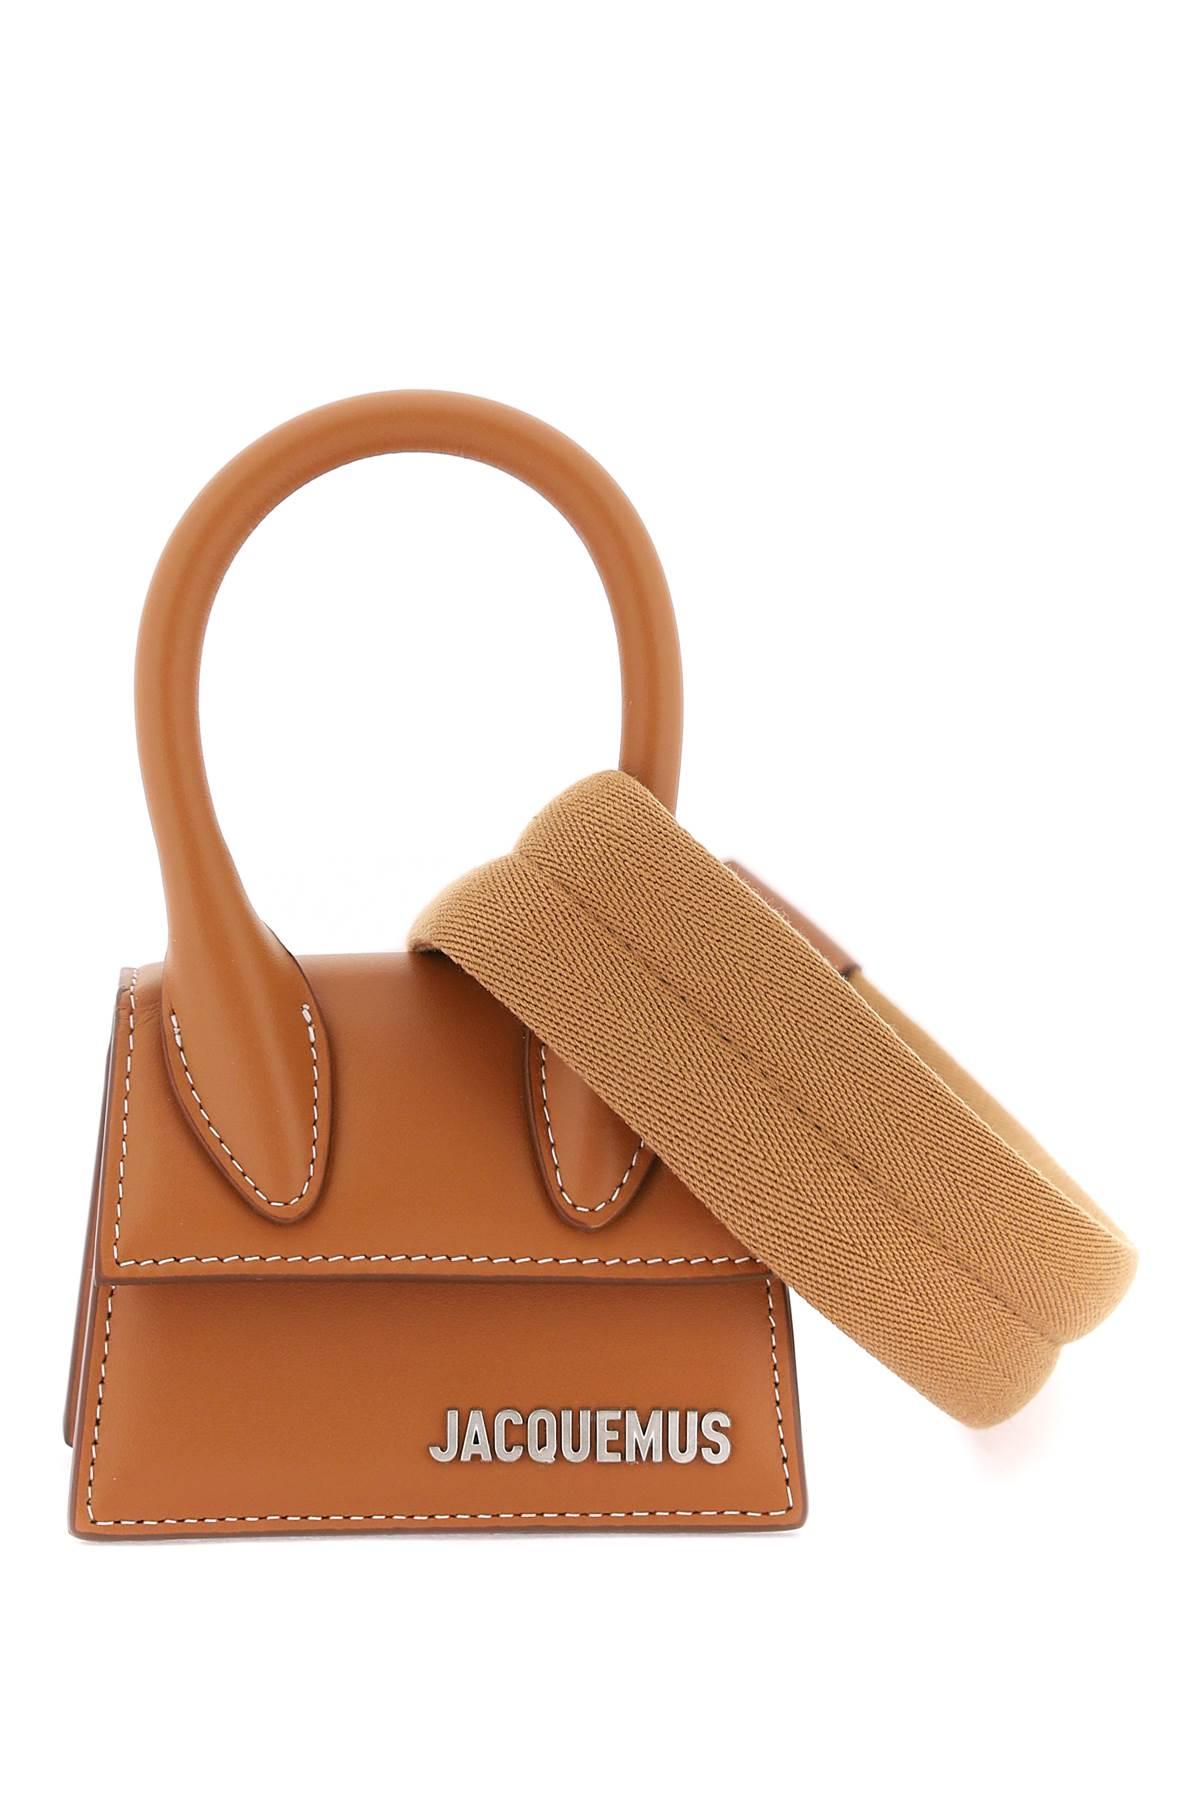 Authentic Jacquemus Le Chiquito mini bag